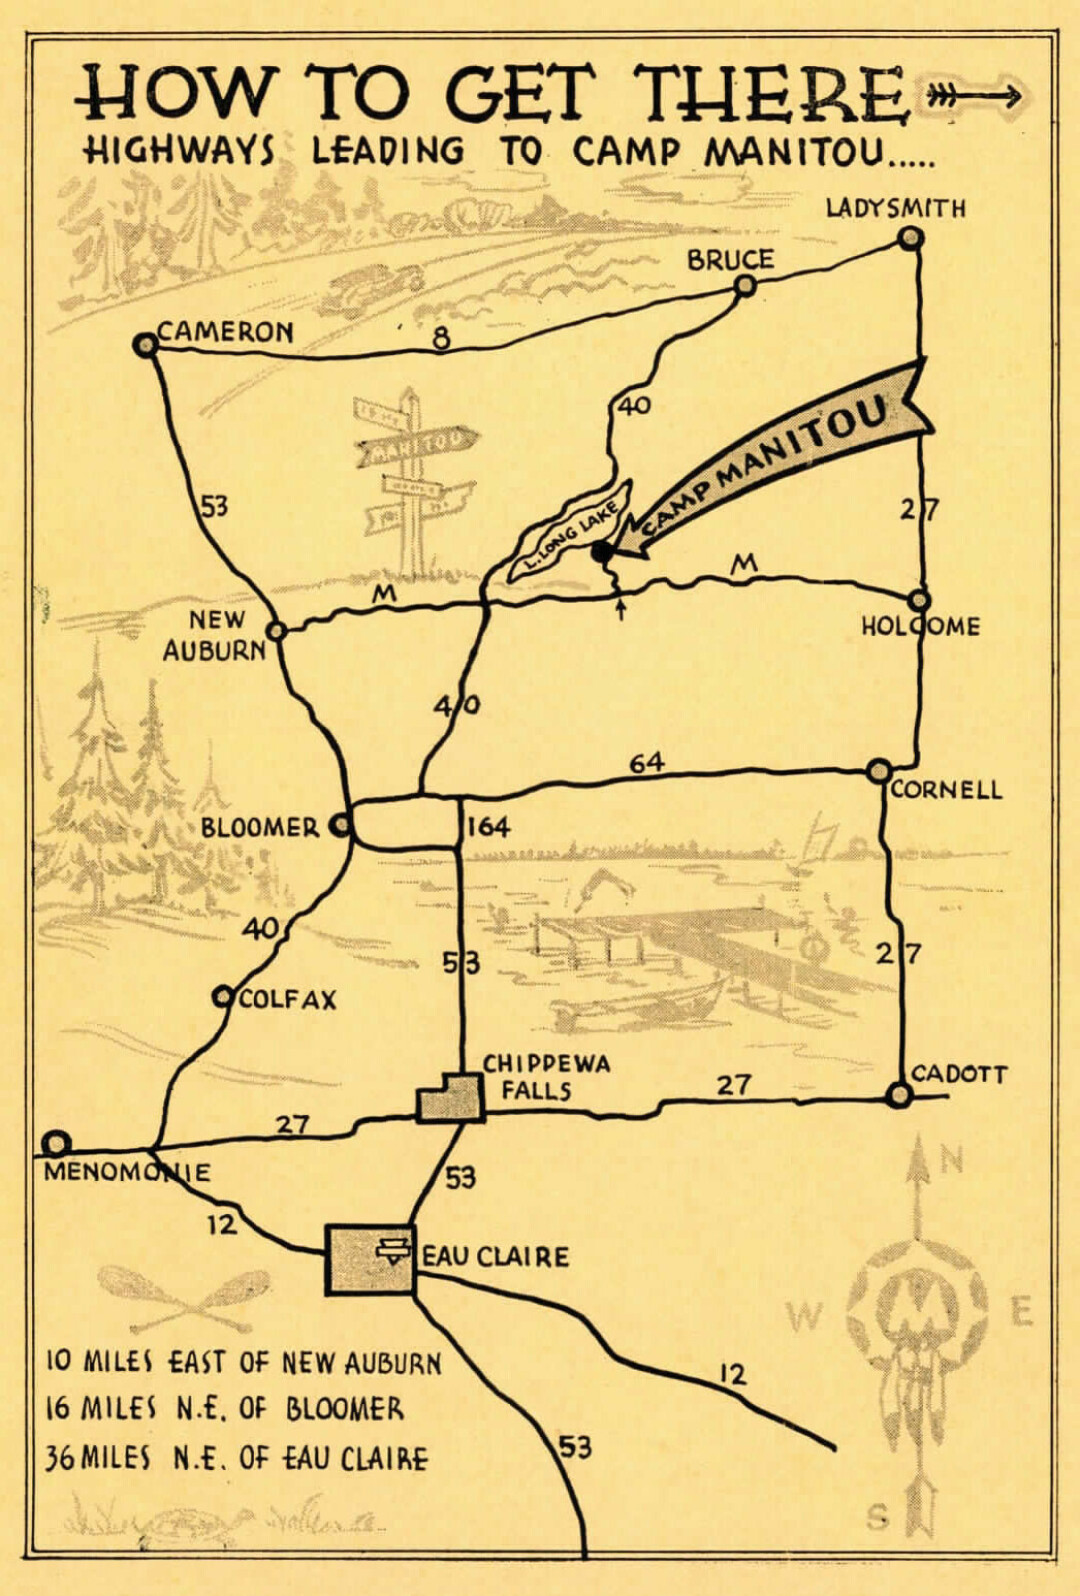 Camp Manitou Map 1945